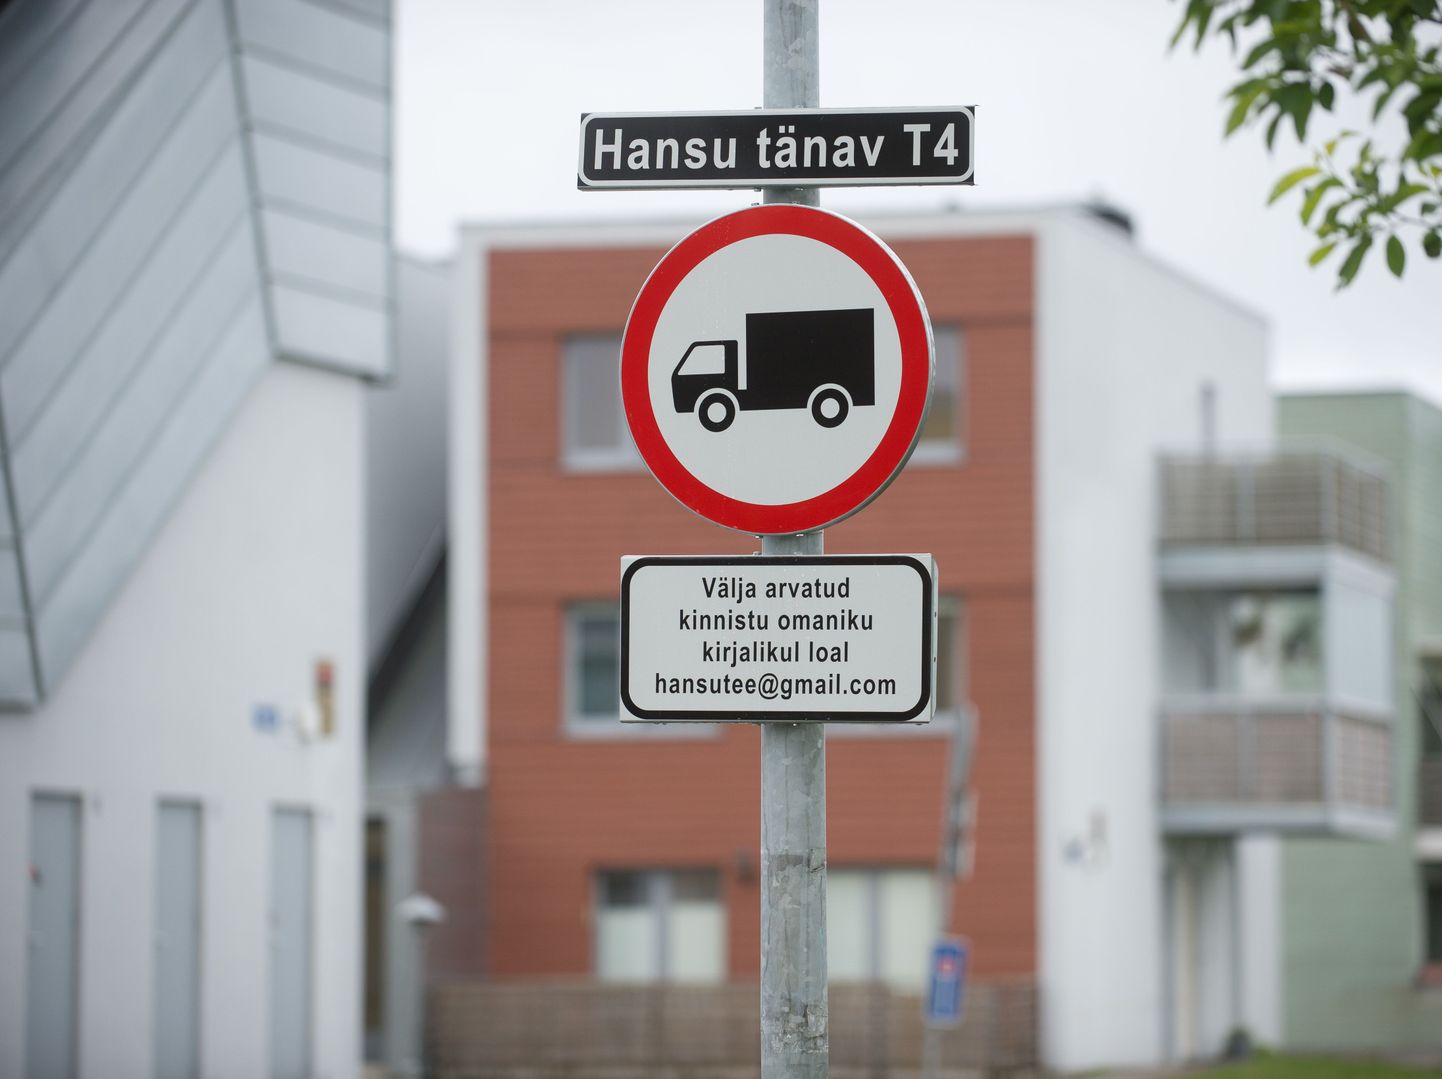 Oksjonilt Hansu tee ostnud ettevõte on tänaval korraldanud tasulise parkimise.